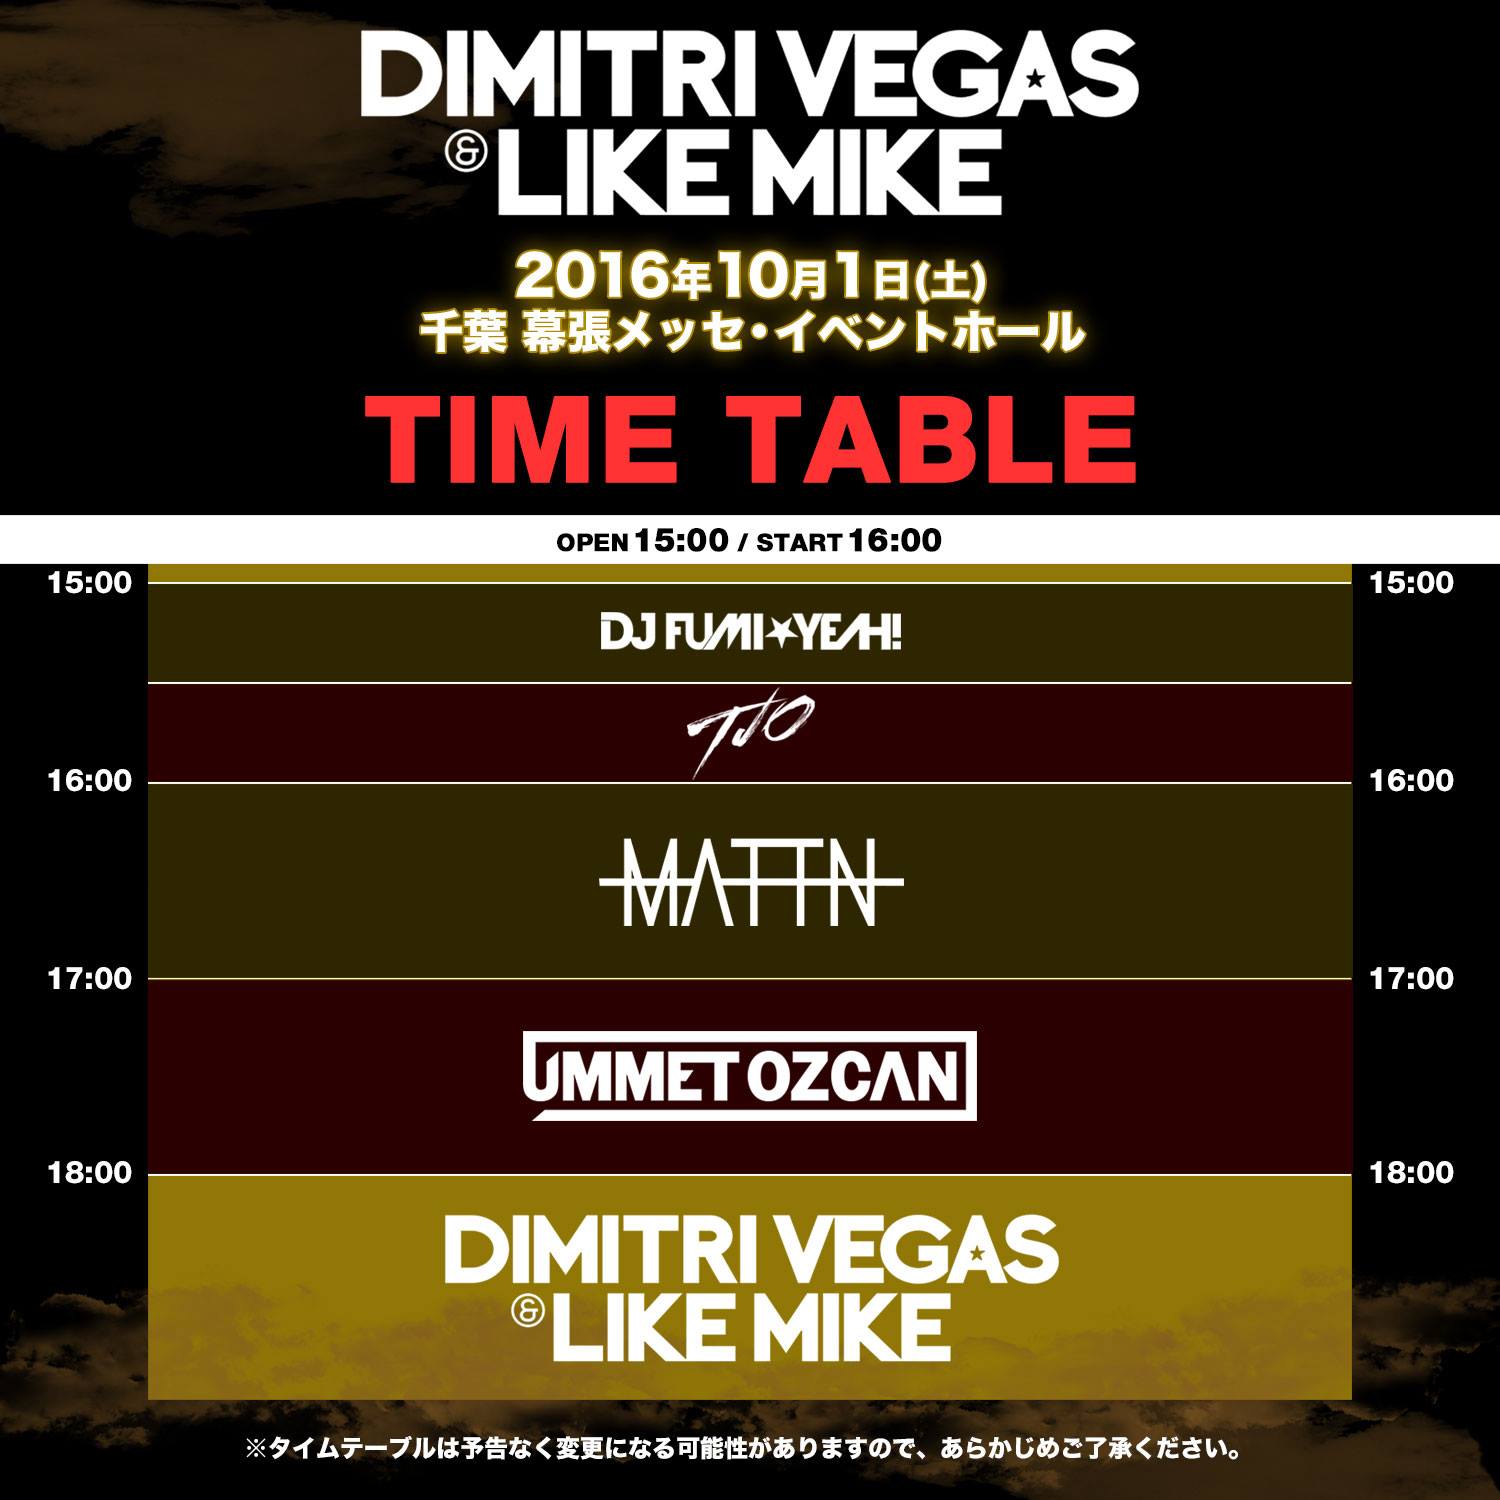 dimitri-vegas-like-mike-timetable-20161001